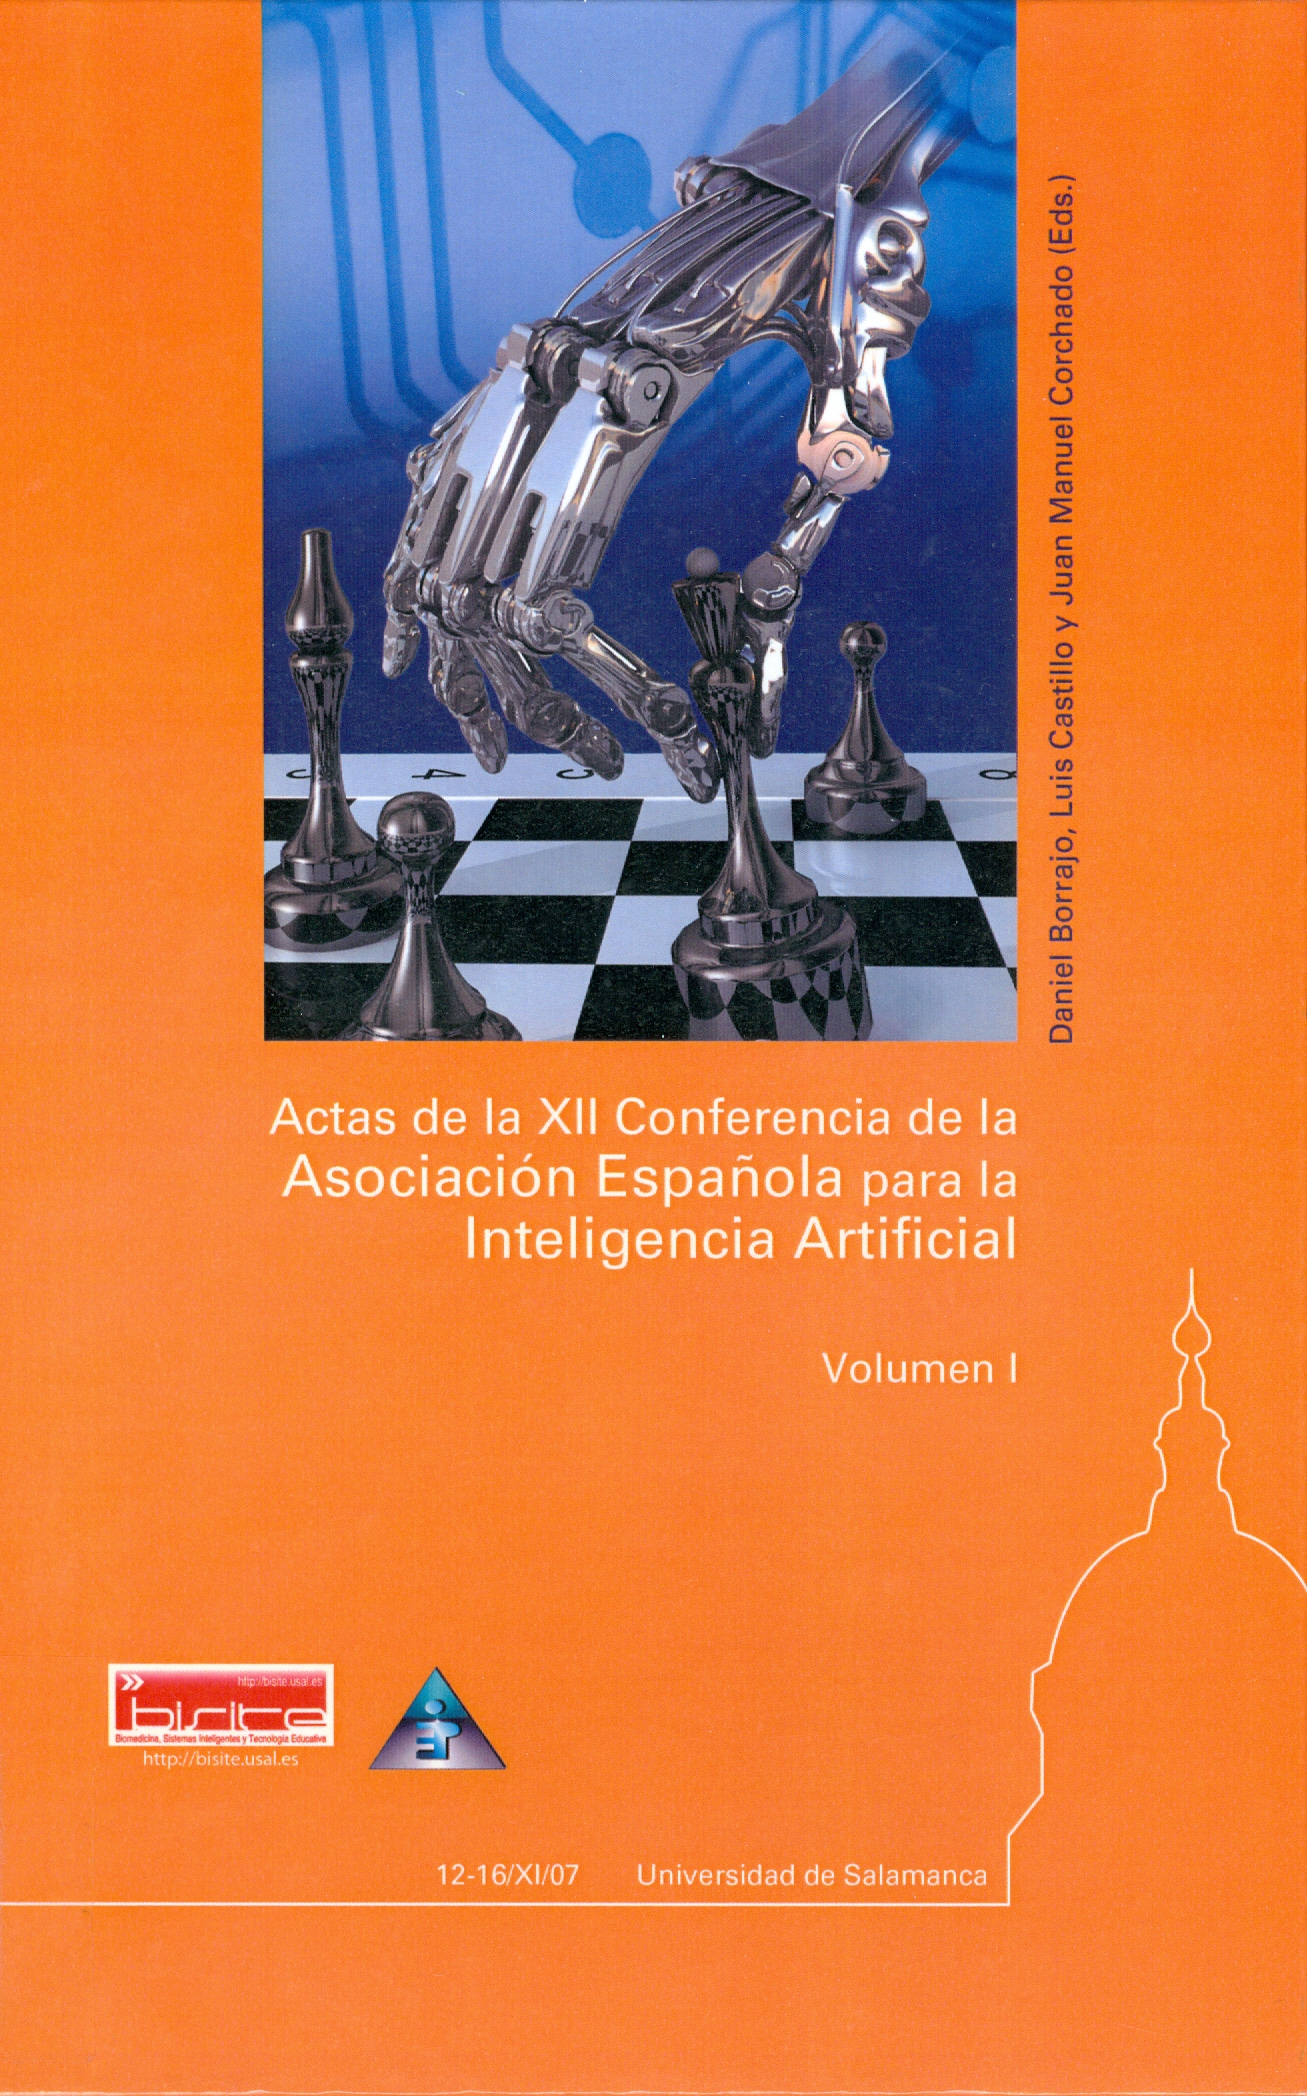 Imagen de portada del libro XII Conferencia de la Asociación Española para la Inteligencia Artificial